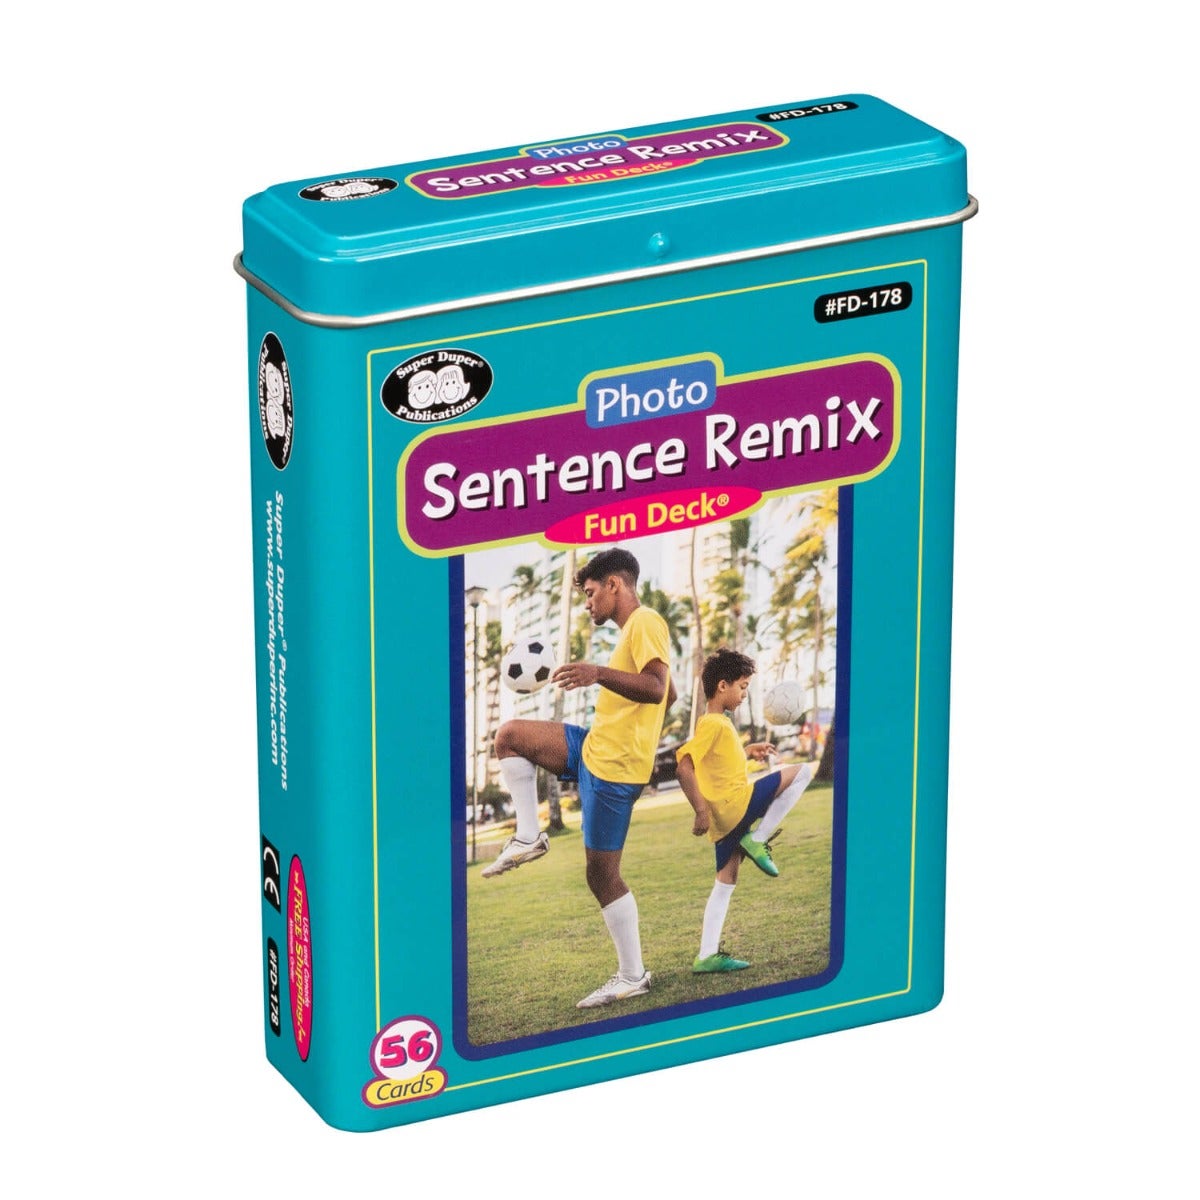 Sentence Remix Fun Deck